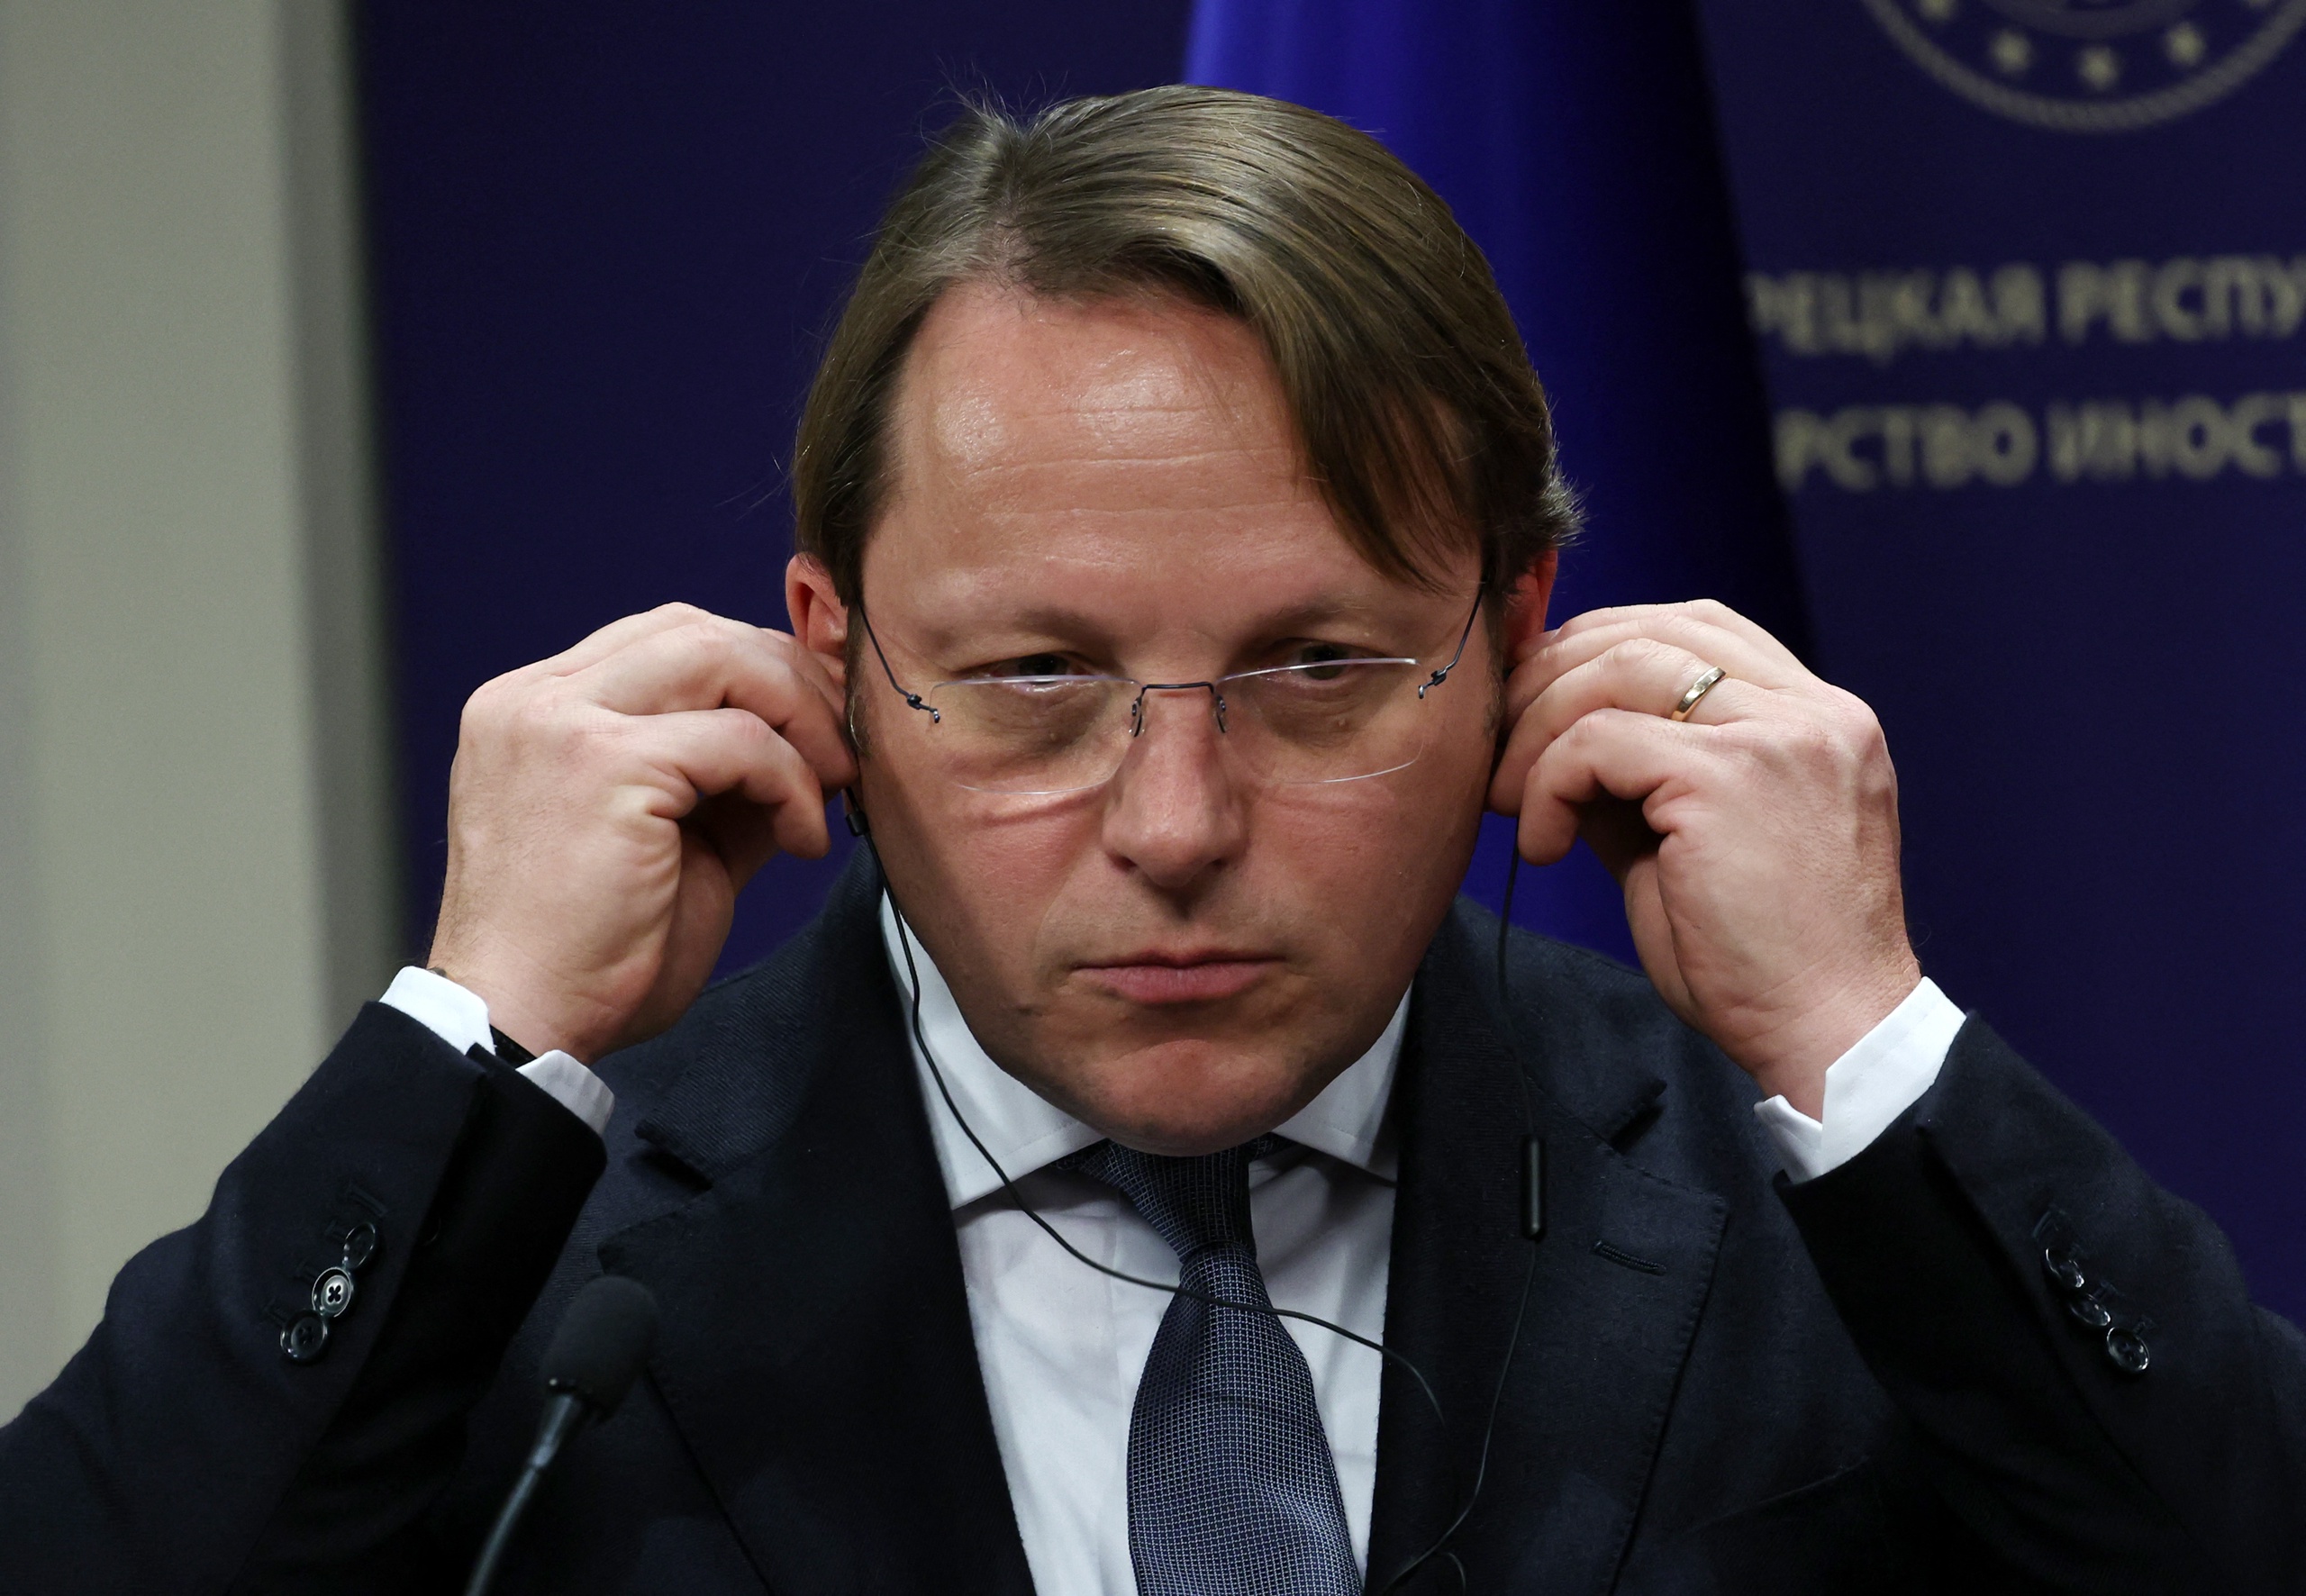 De Hongaarse Eurocommissaris voor Nabuurschap en Uitbreiding Olivér Várhelyi. Volgens VVD-Europarlementariër Bart Groothuis een stroman van Viktor Orbán. De Europese Commissie stelt een onderzoek in naar Várhelyi.